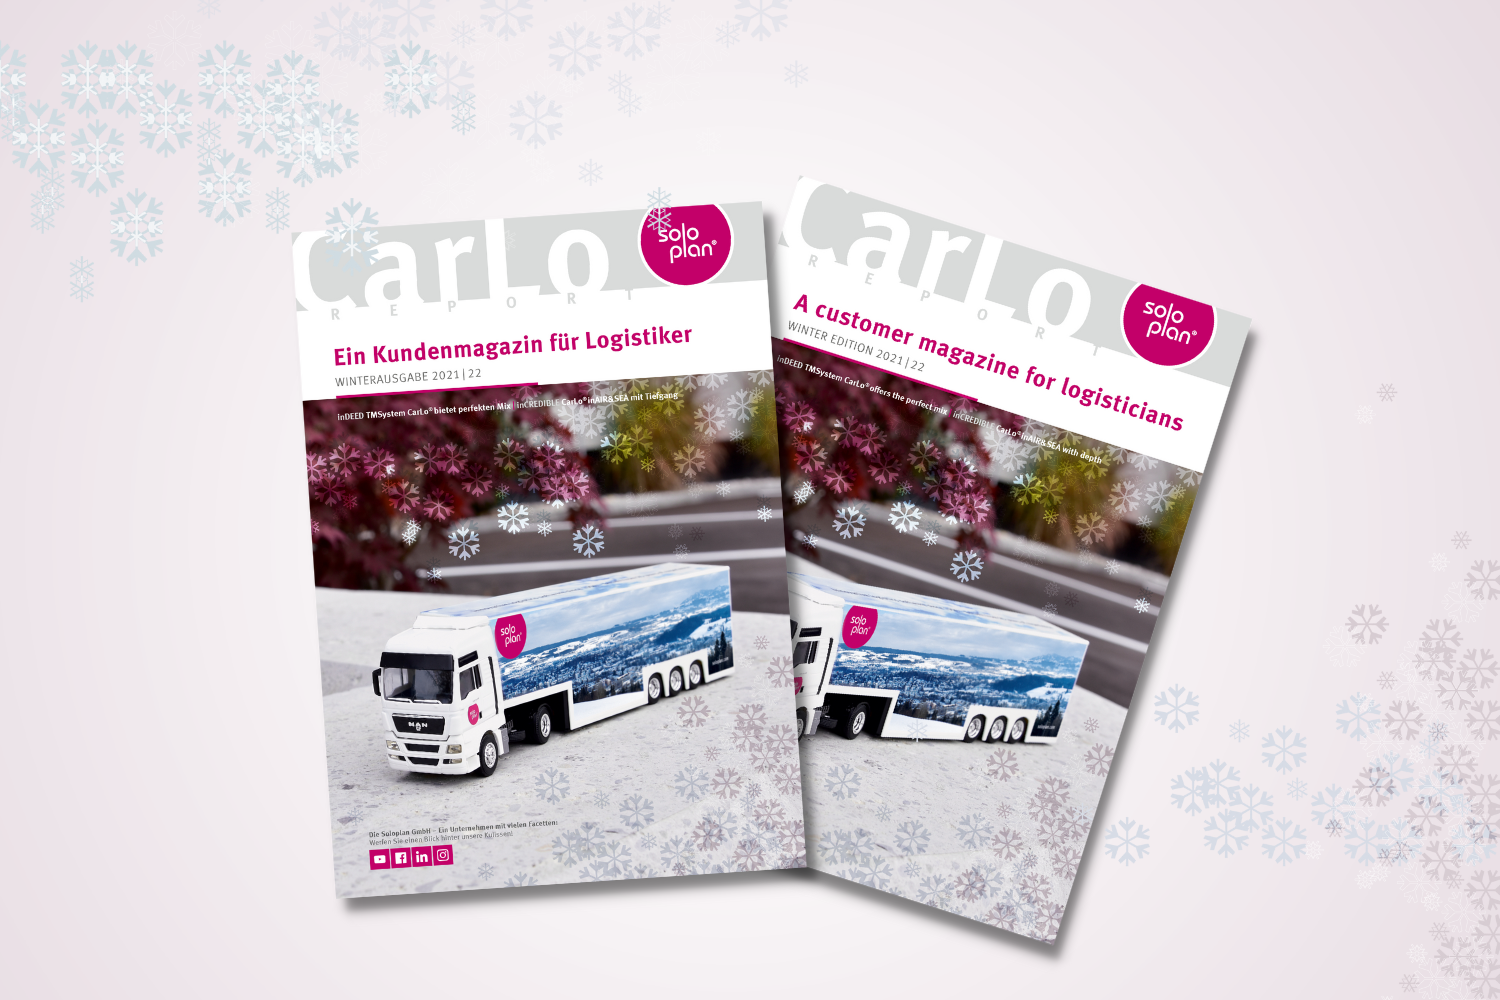 Wir präsentieren: Unser neuer CarLo-Report!